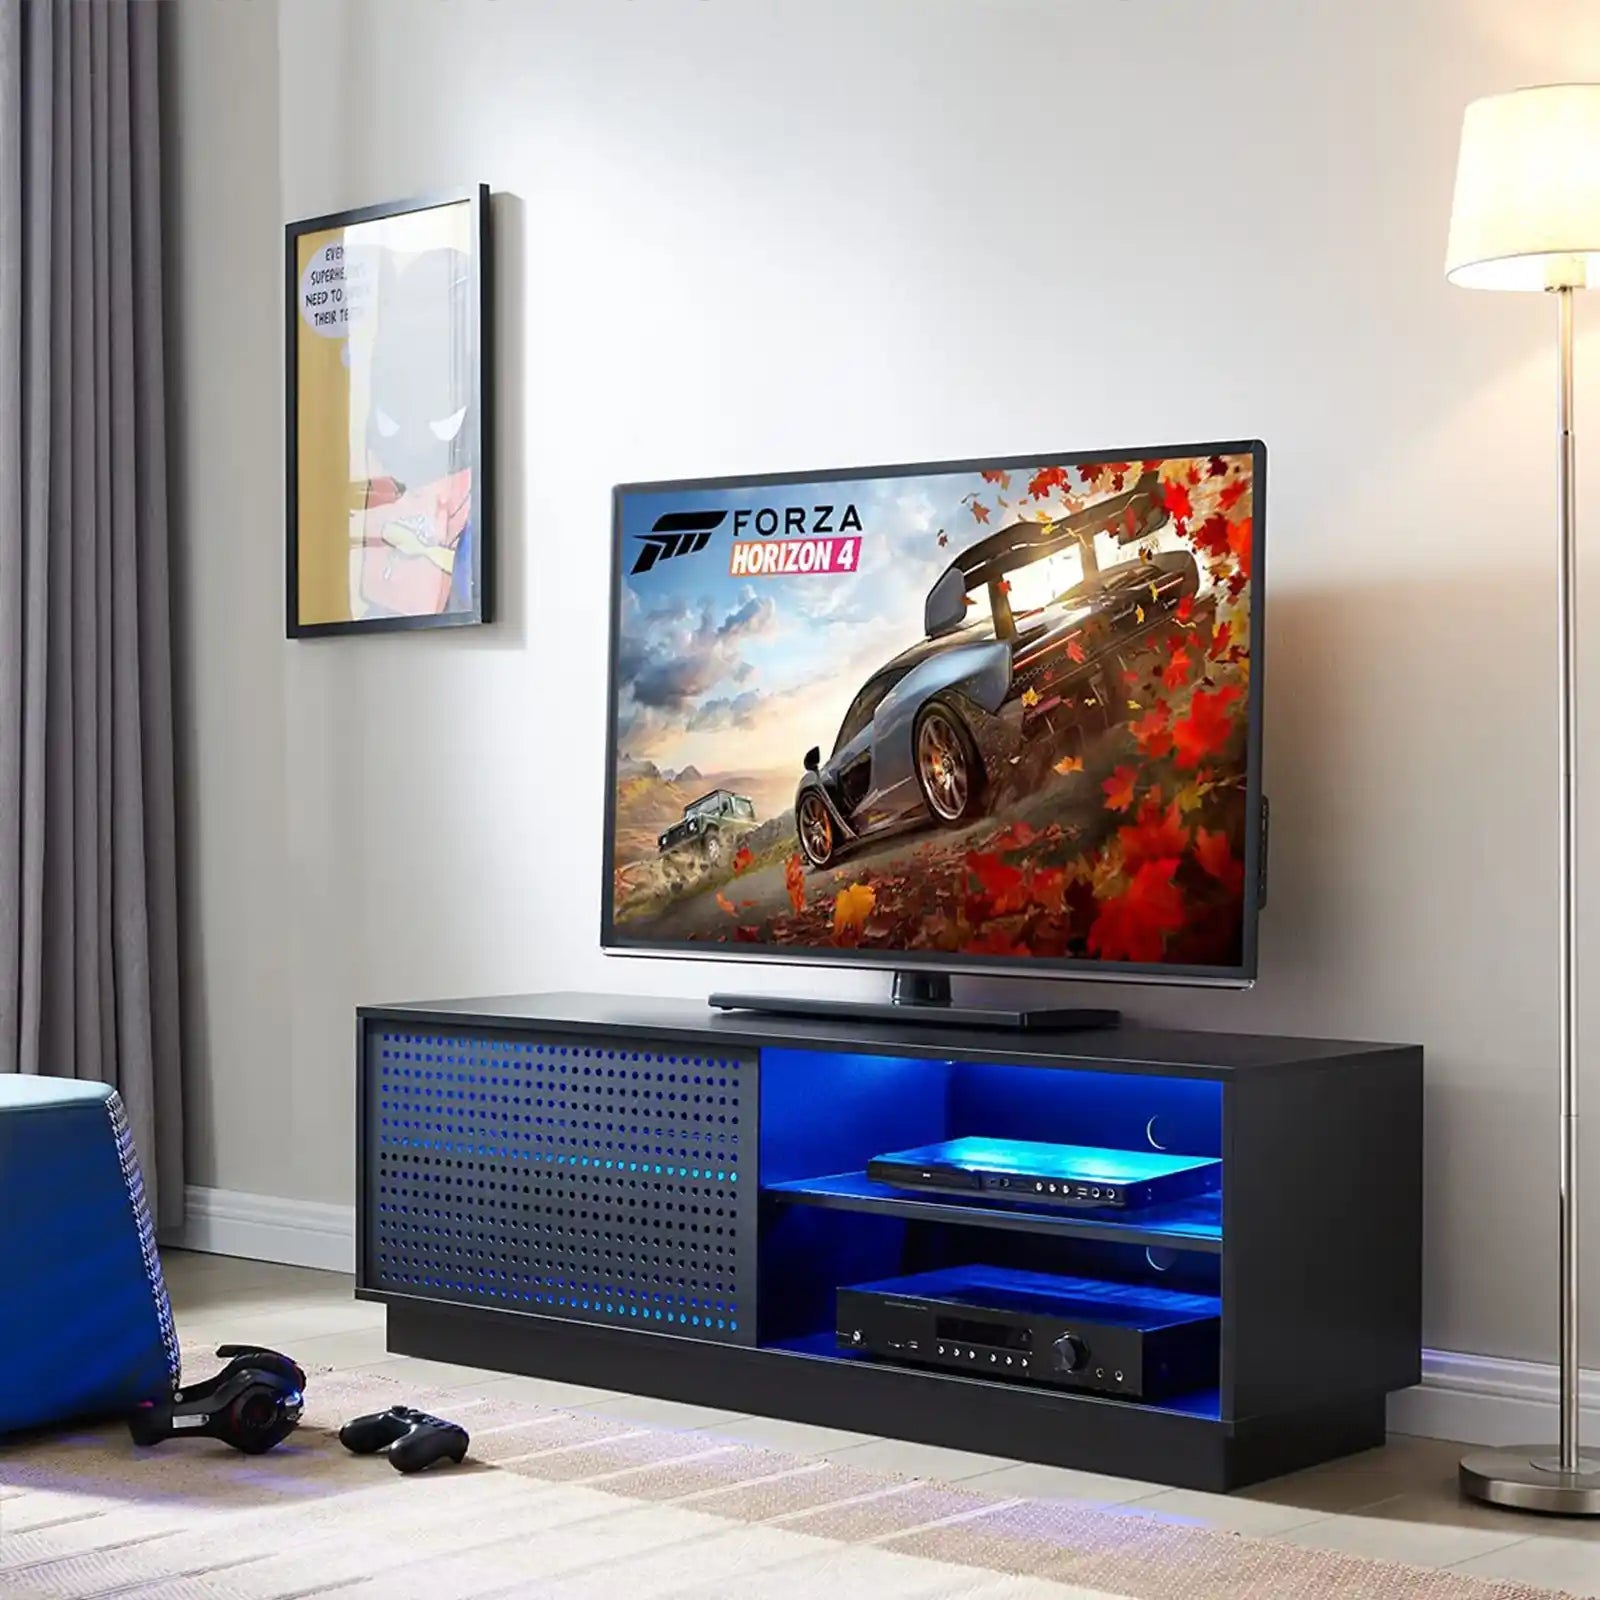 Soporte para TV, mueble para TV, soporte para TV LED para TV de 65 pulgadas, centro de entretenimiento, soportes de televisión modernos de 54 pulgadas, mesa consola para TV 